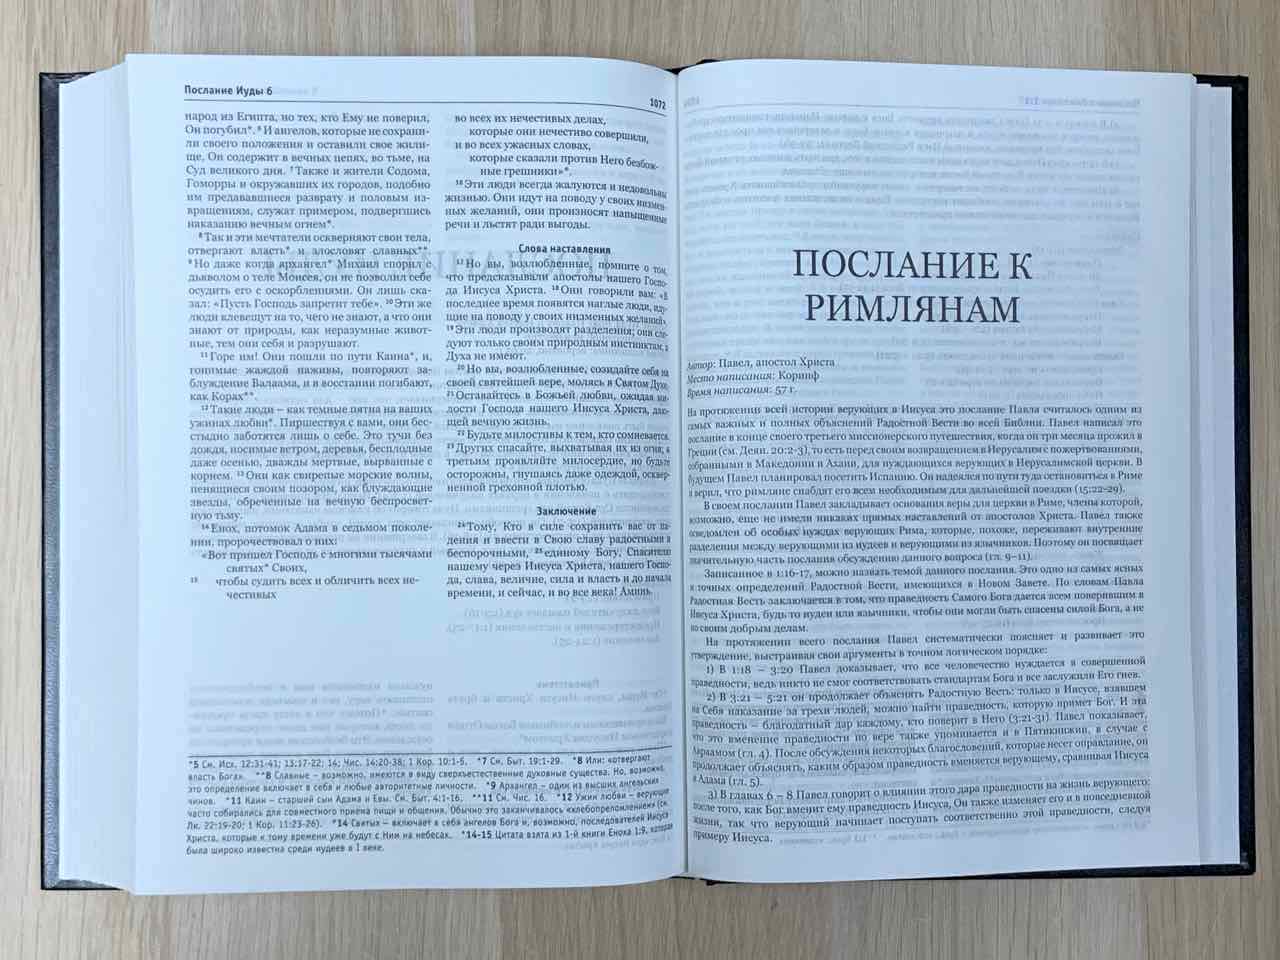 Библия в современном переводе (новый русский перевод) 073 цвет черный, с небольшими дефектами на внешней обложке